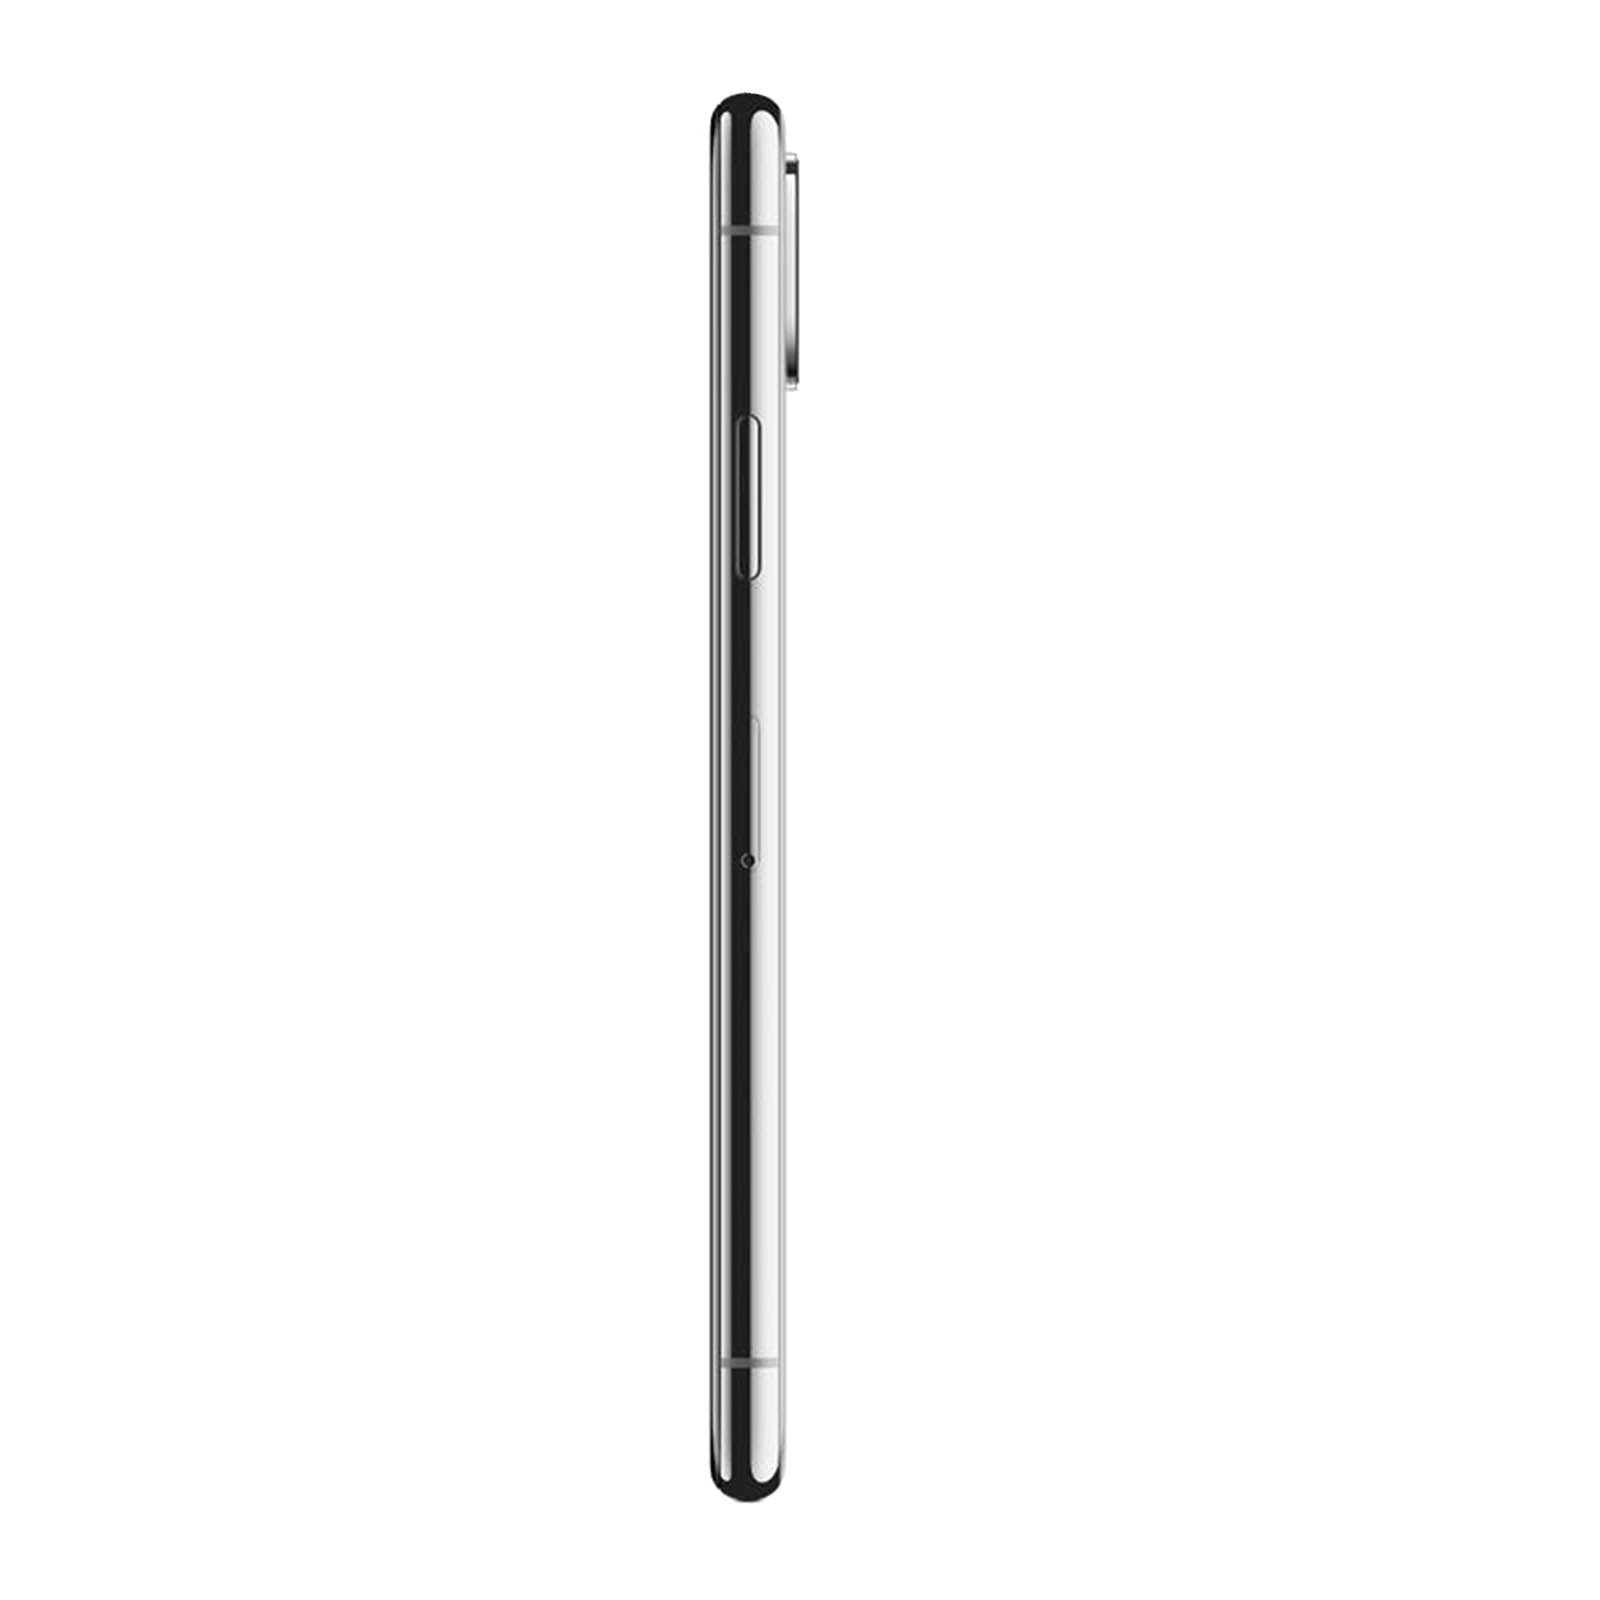 Apple iPhone XS Max 64GB Space Grey Unlocked Very Good – Loop Mobile